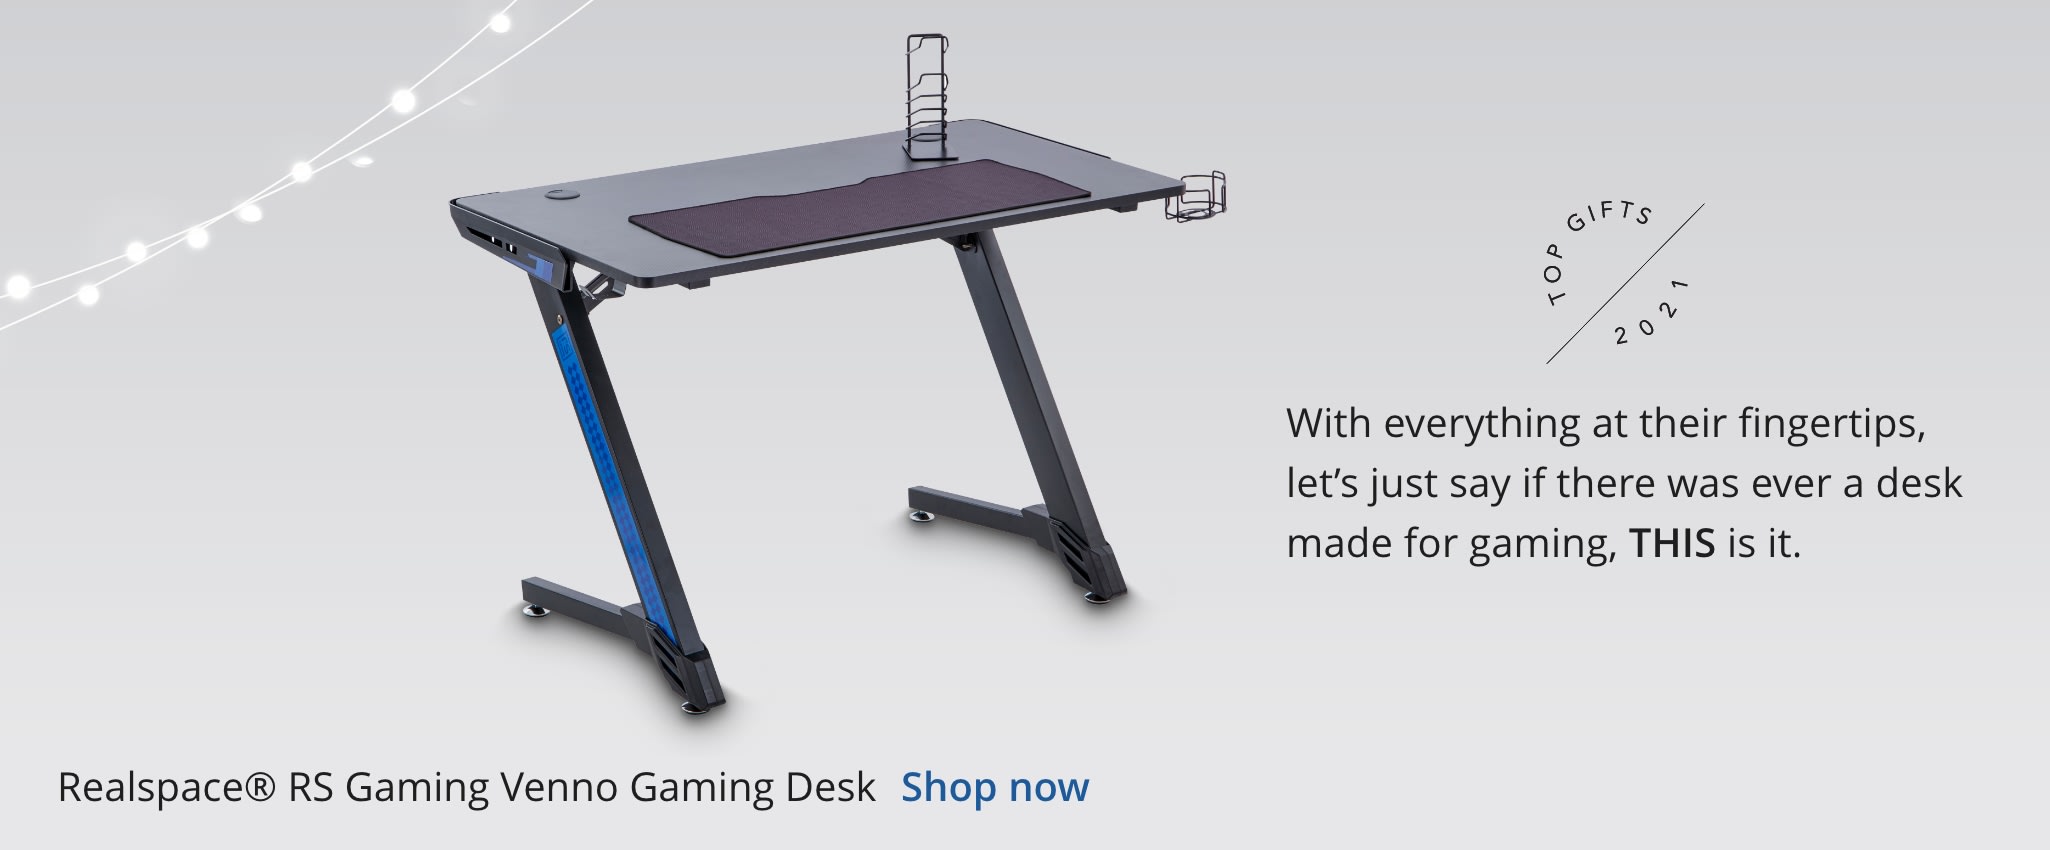 Realspace® RS Gaming™ Venno Gaming Desk